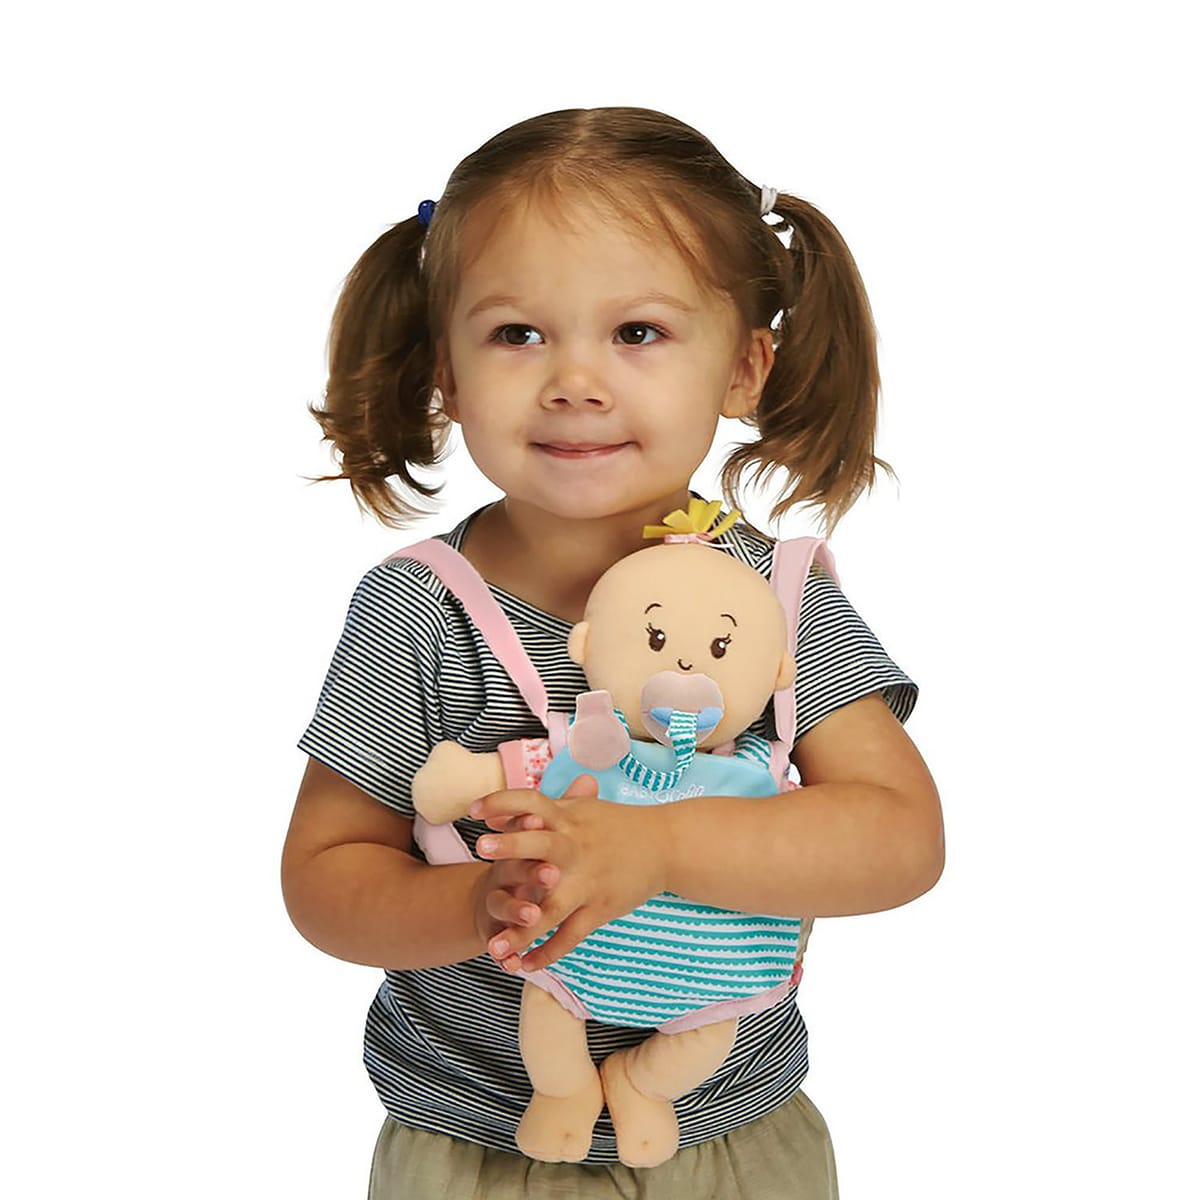 リトル ベビーステラ 抱っこひも 29cm用 ボーネルンド オンラインショップ 世界中の知育玩具など あそび道具がたくさん 0歳からのお子様へのプレゼントにも